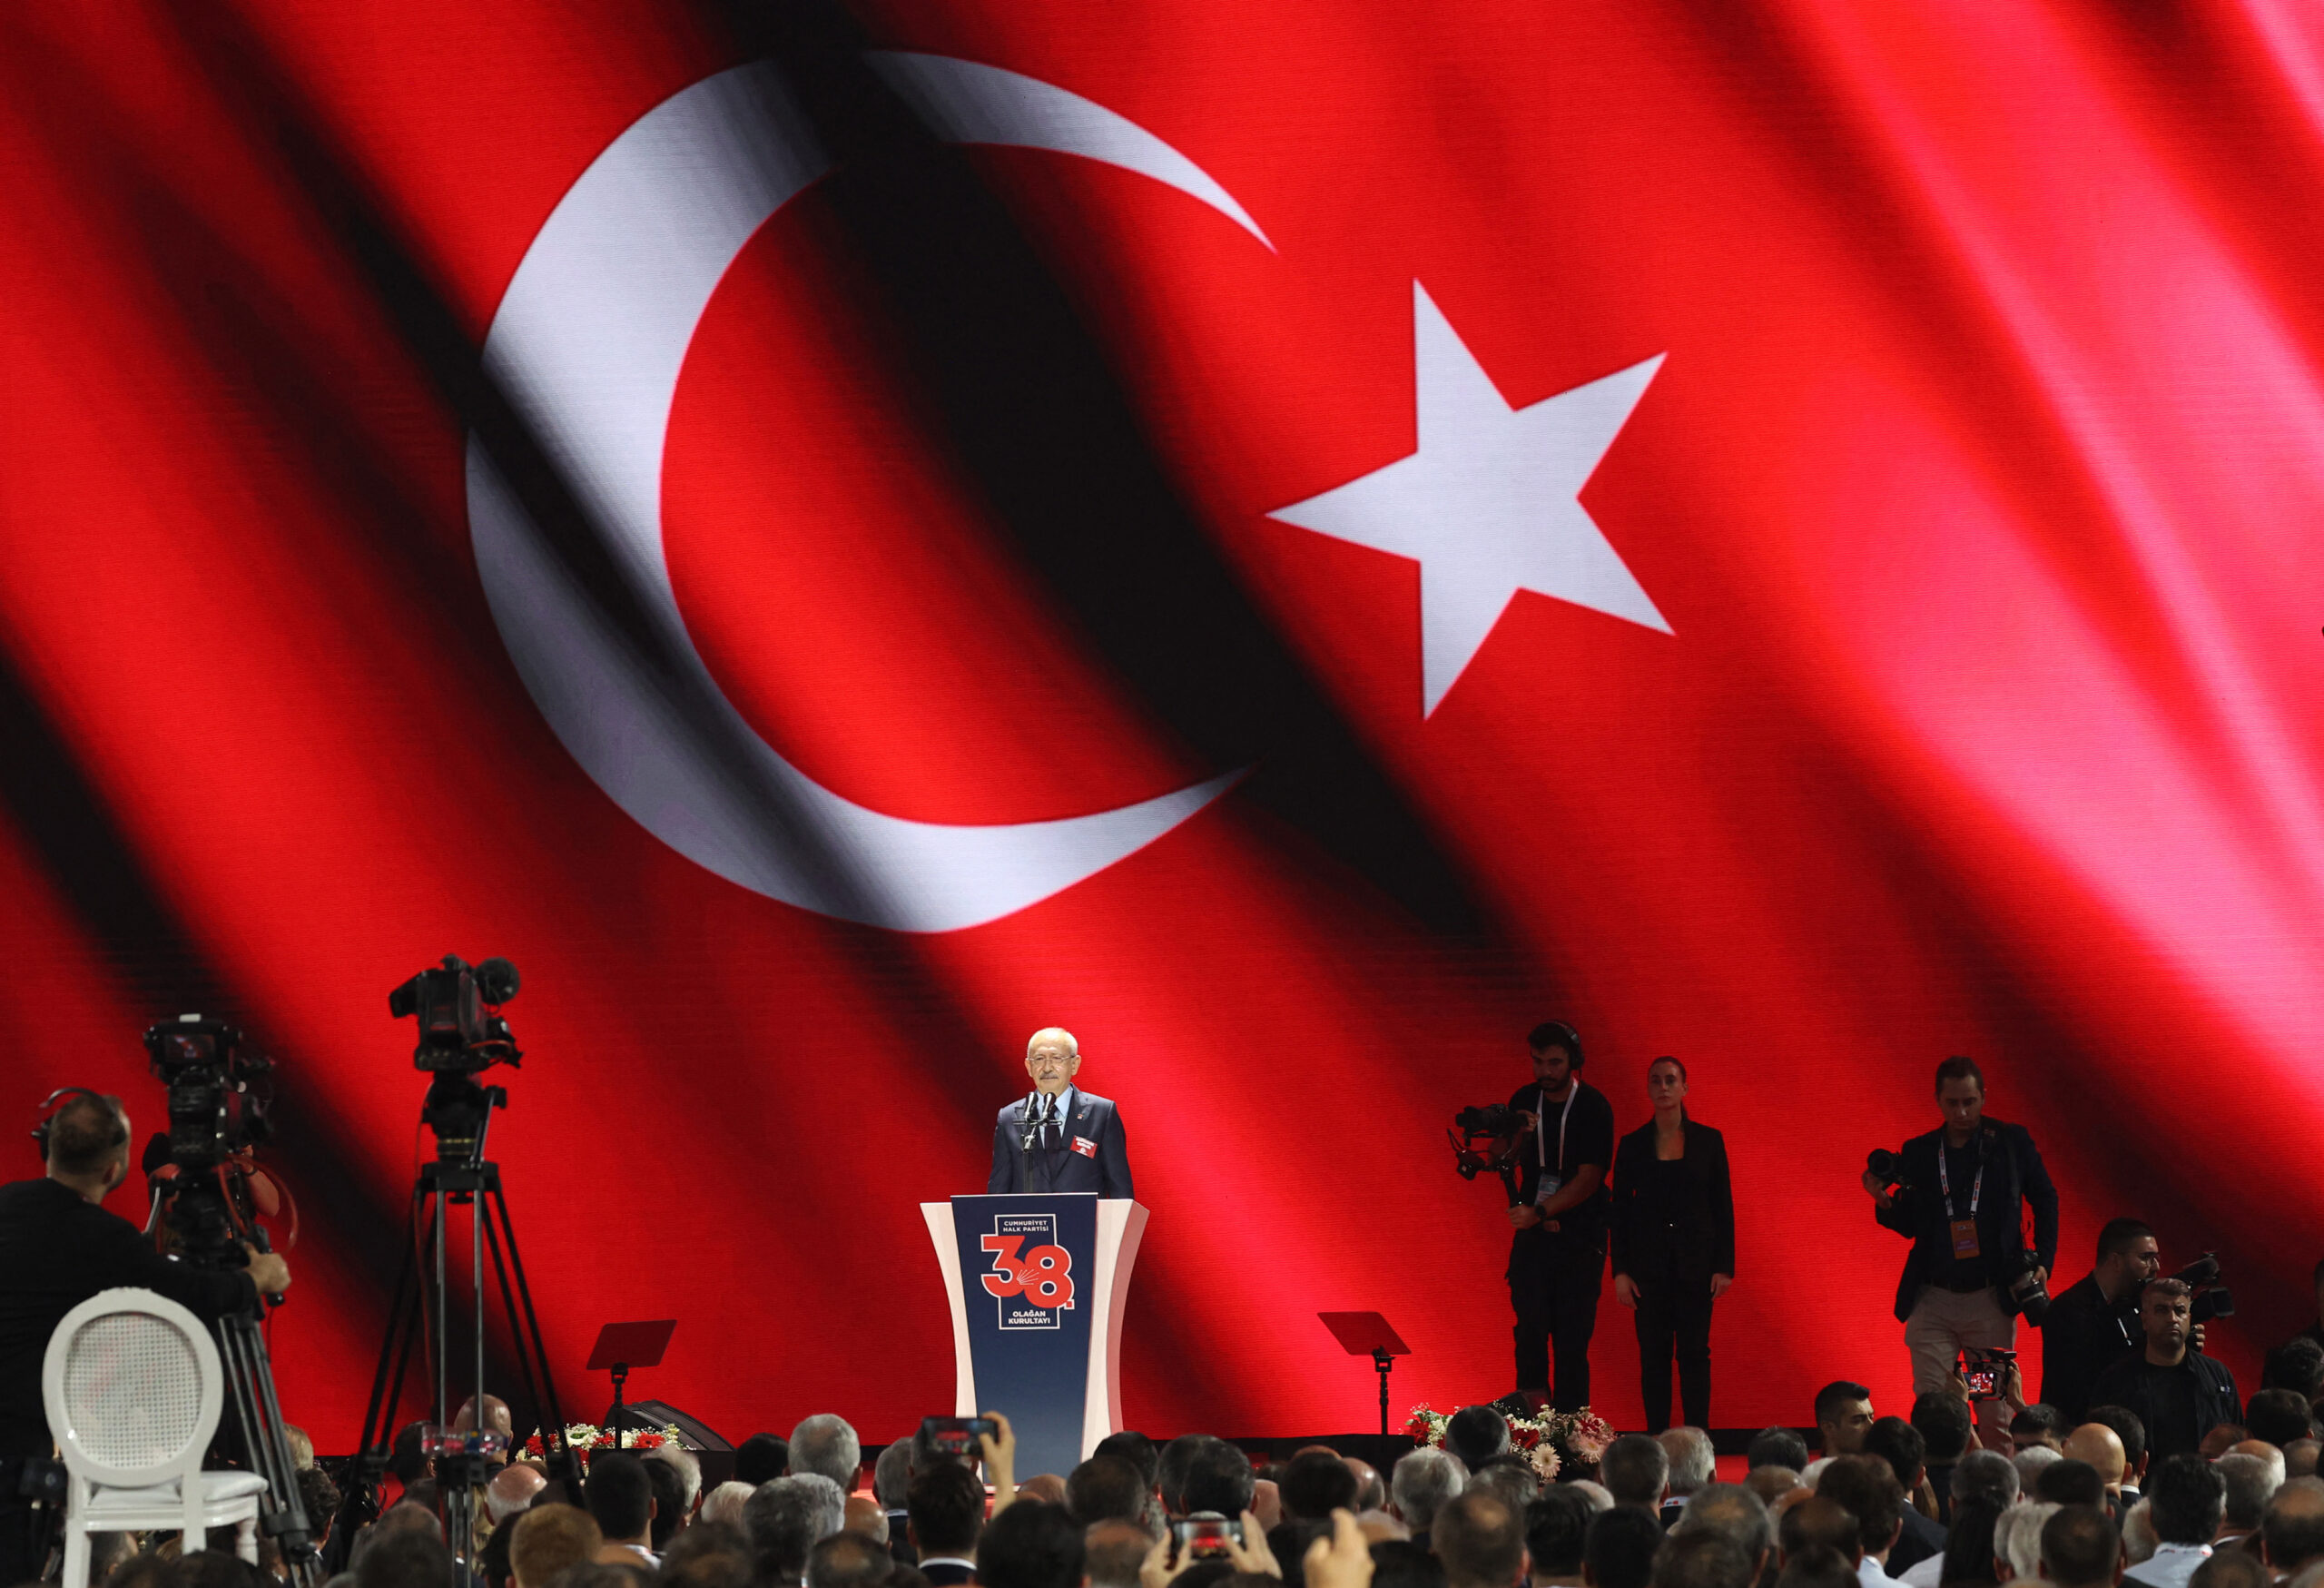 Τουρκία: Δεύτερος γύρος για την εκλογή προέδρου στο Ρεπουμπλικανικό Λαϊκό Κόμμα – Ο Οζγκιούρ Οζέλ νικητής του α’ γύρου